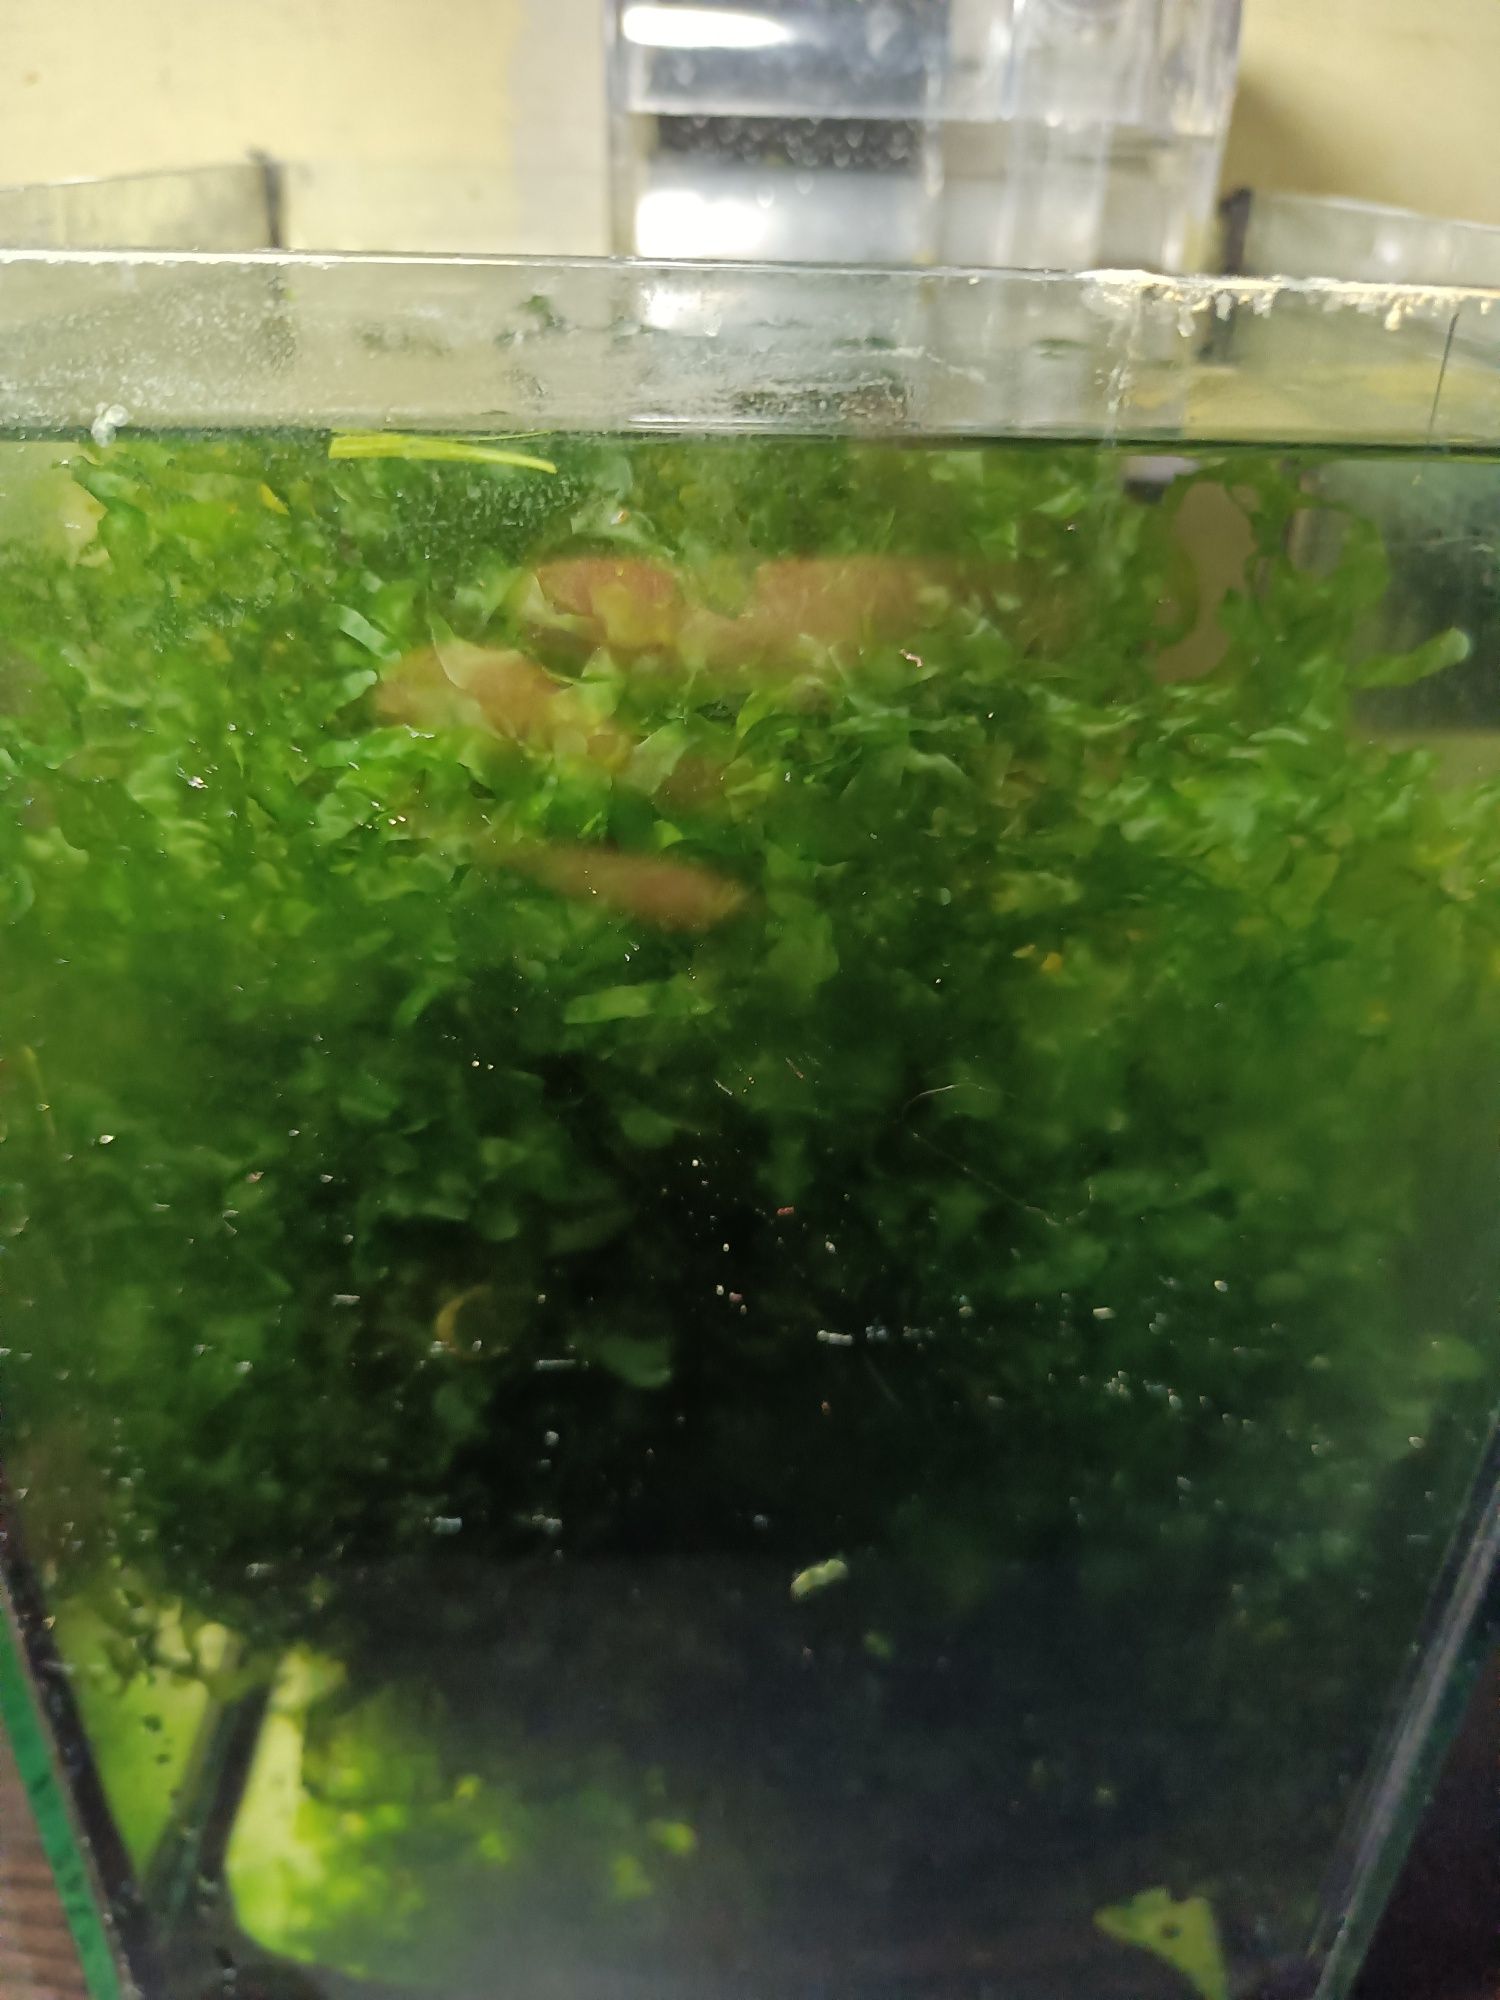 Pelia watrobowiec akwarium krewetkarium